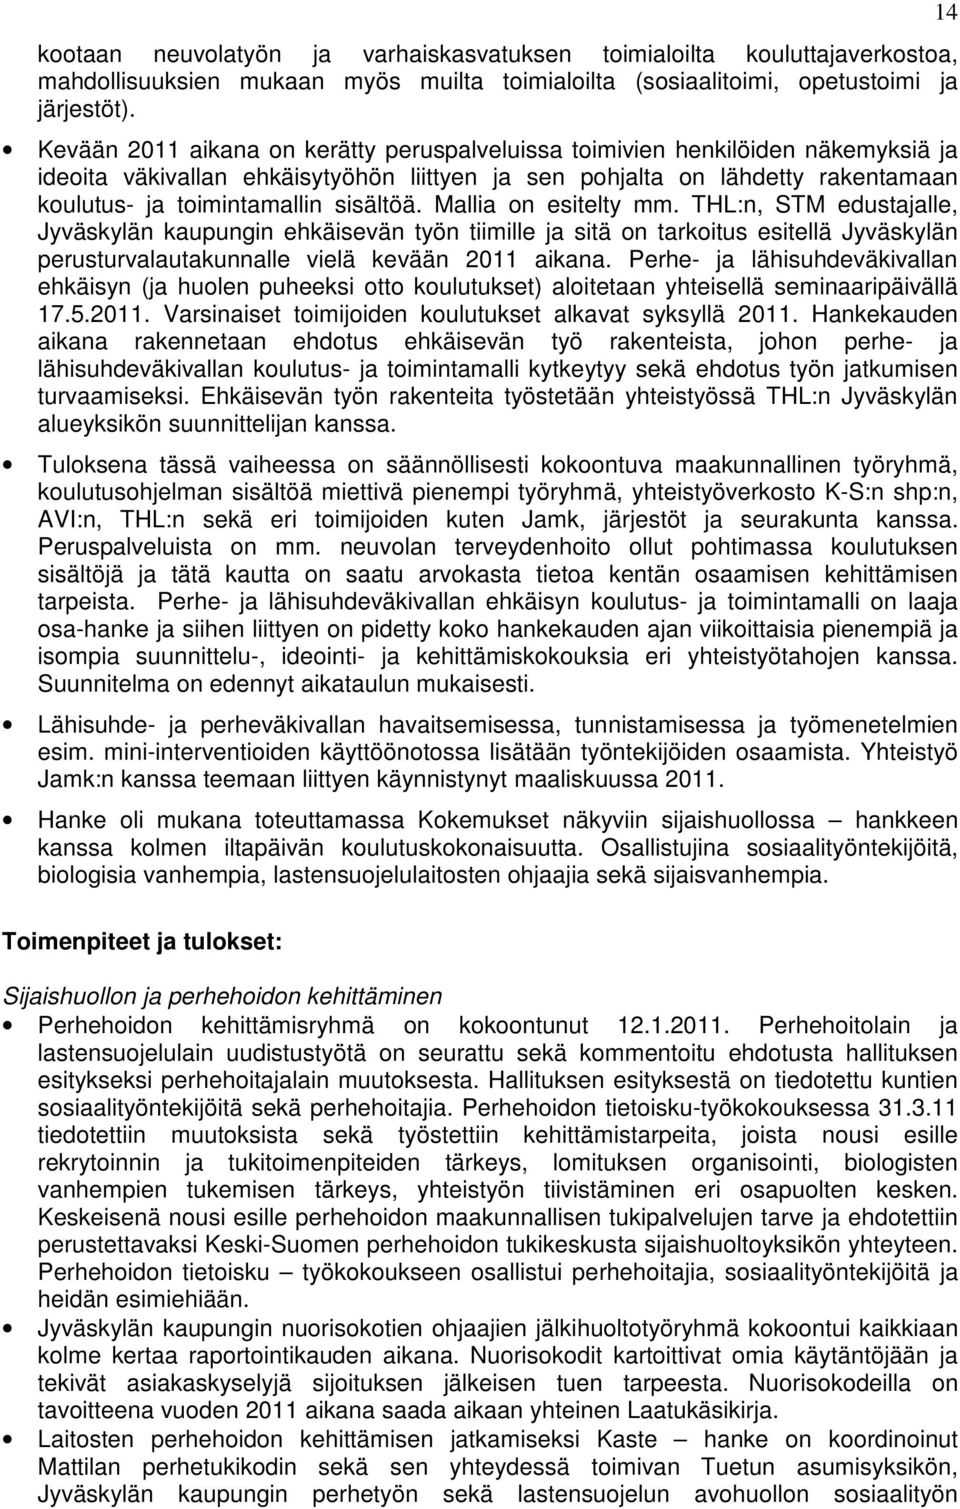 sisältöä. Mallia on esitelty mm. THL:n, STM edustajalle, Jyväskylän kaupungin ehkäisevän työn tiimille ja sitä on tarkoitus esitellä Jyväskylän perusturvalautakunnalle vielä kevään 2011 aikana.